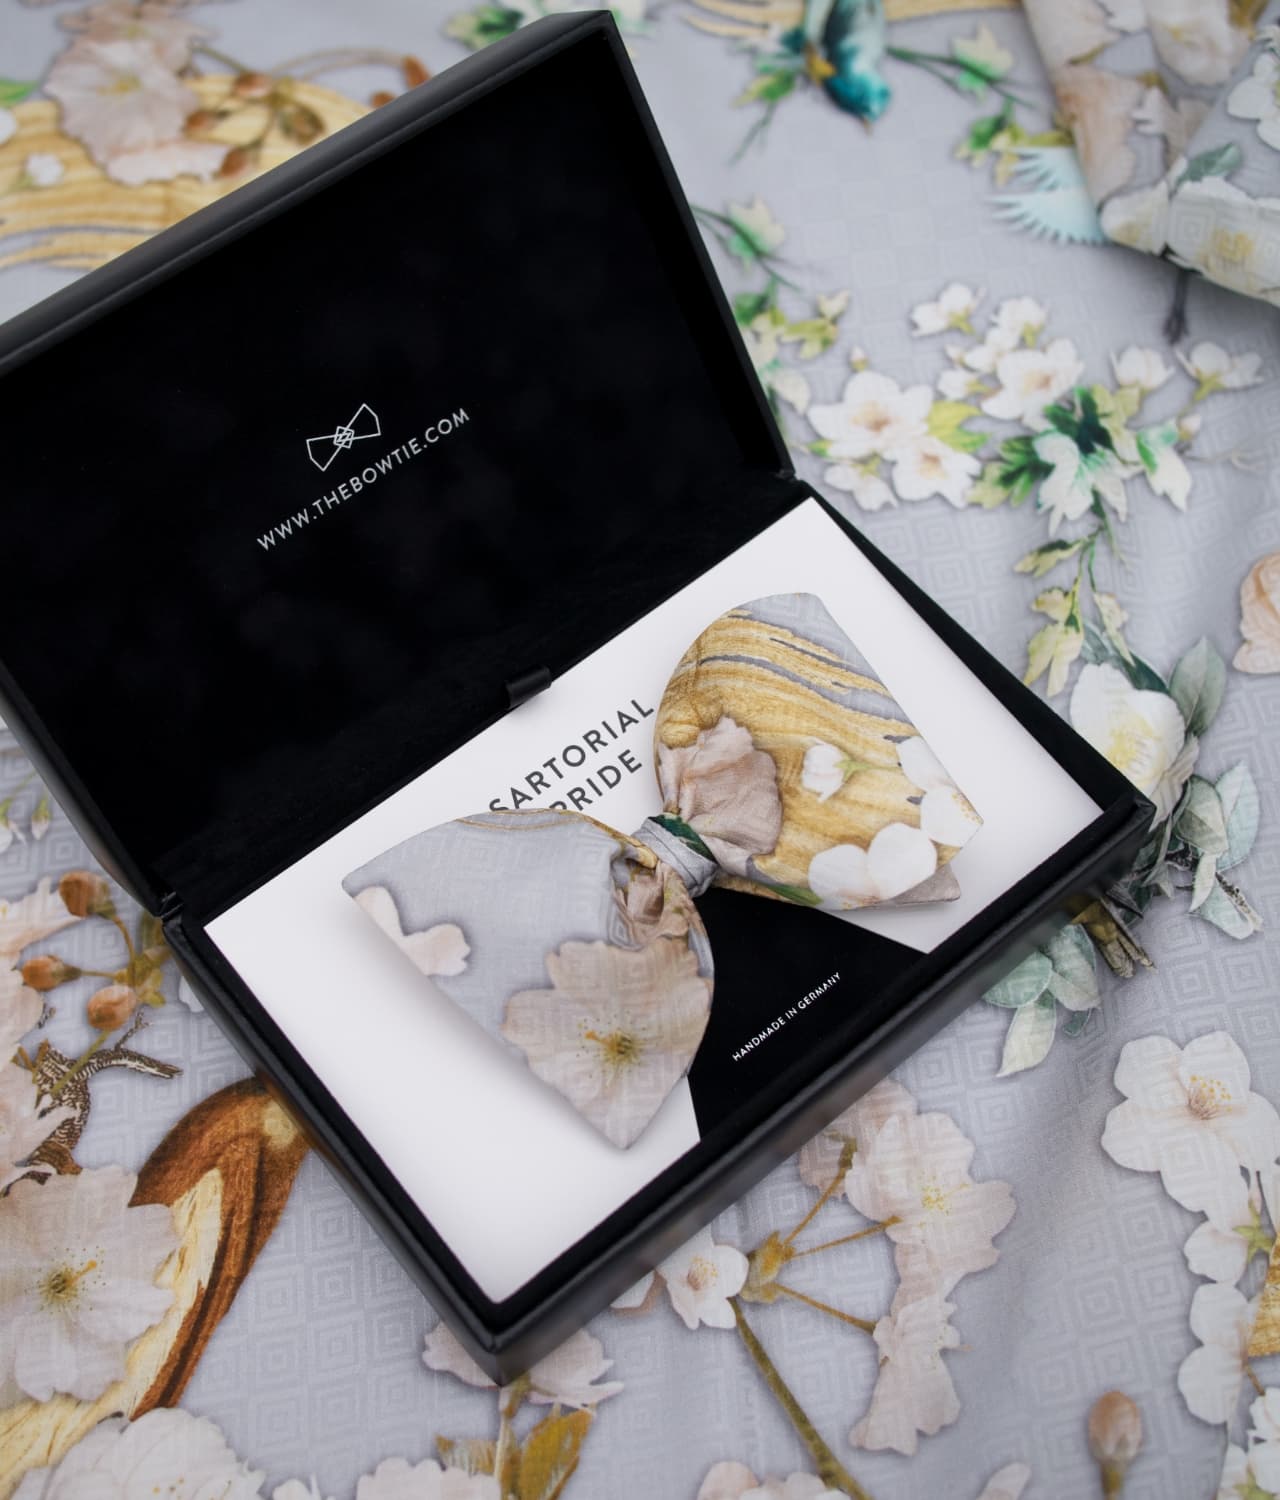 Grey Floral Bow Tie - 100% Silk - Perfect Wedding Companion - BOG7